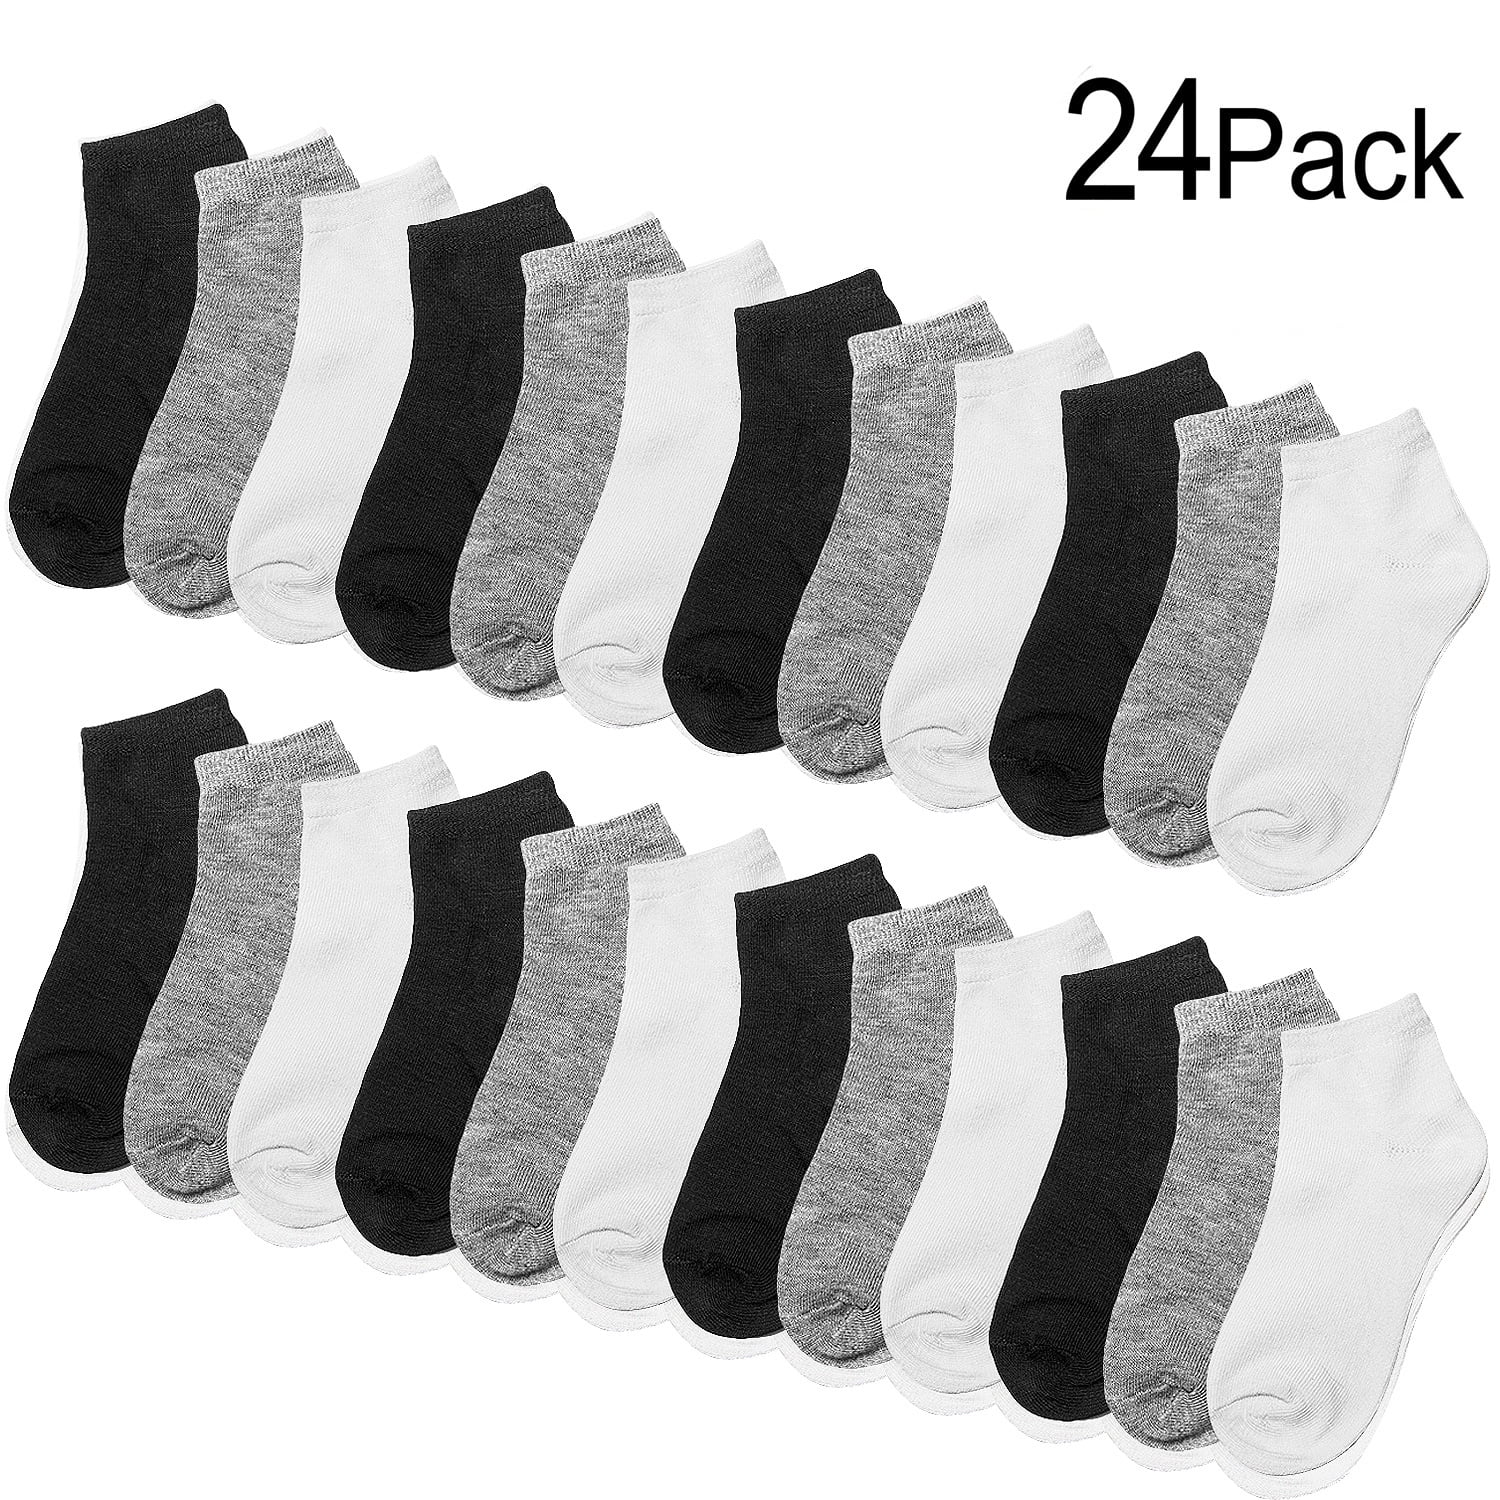 Boys Cotton Socks Kids Summer Breathable Short Socks 5 Pack